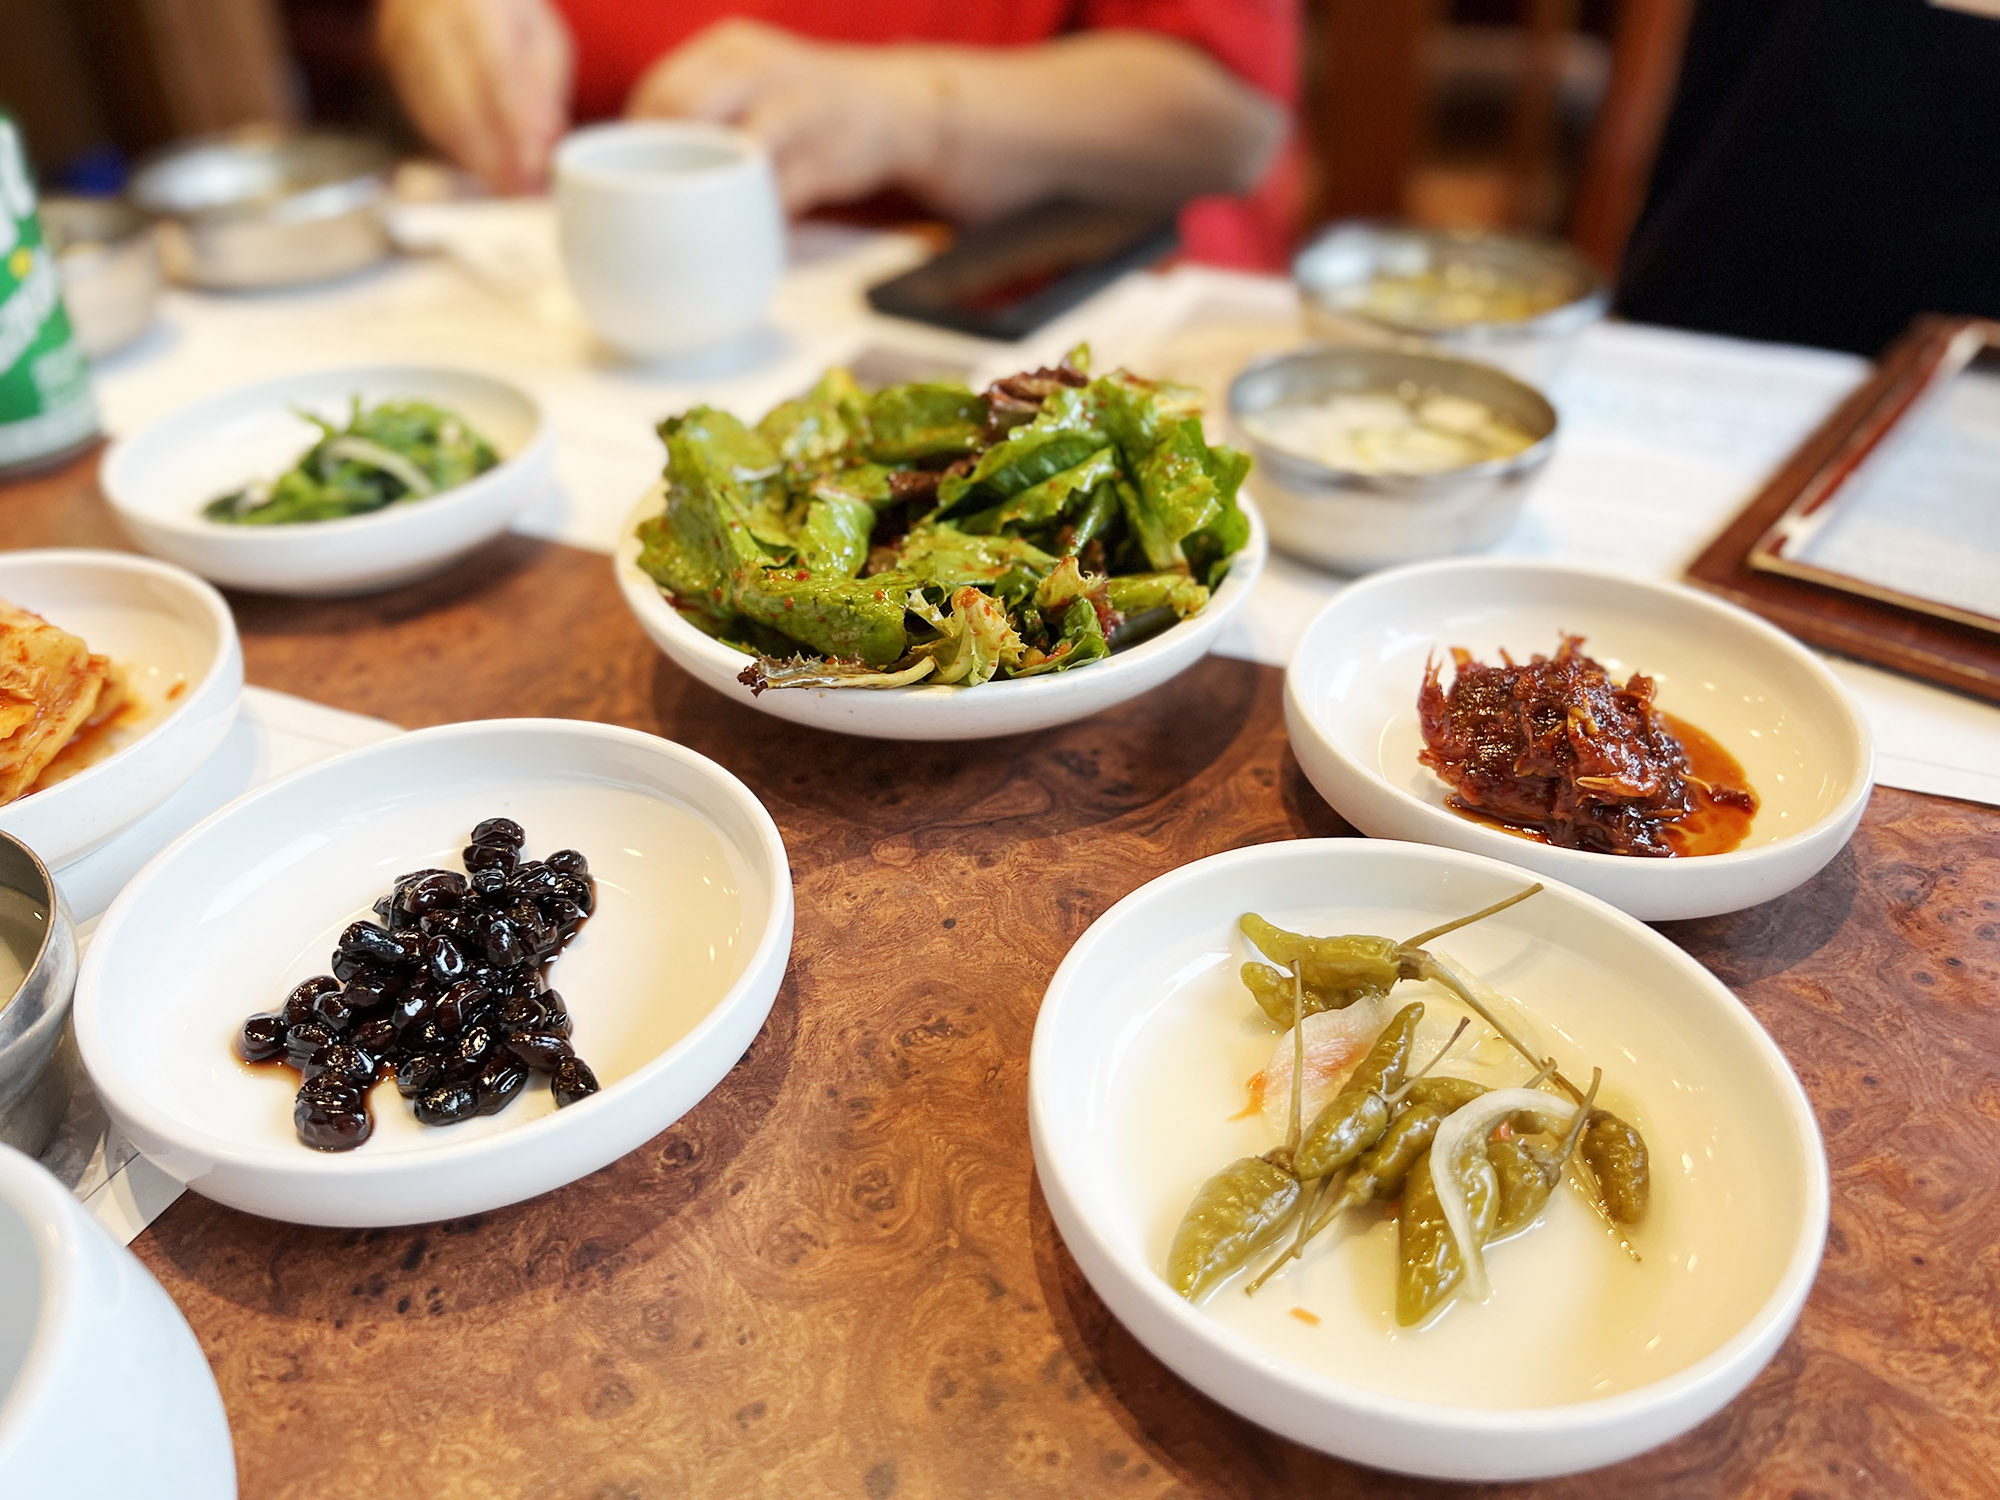 Jeonju: Lækker Bibimbap på Hankook Jib i Jeonju, Korea blog, Mitzie Mee